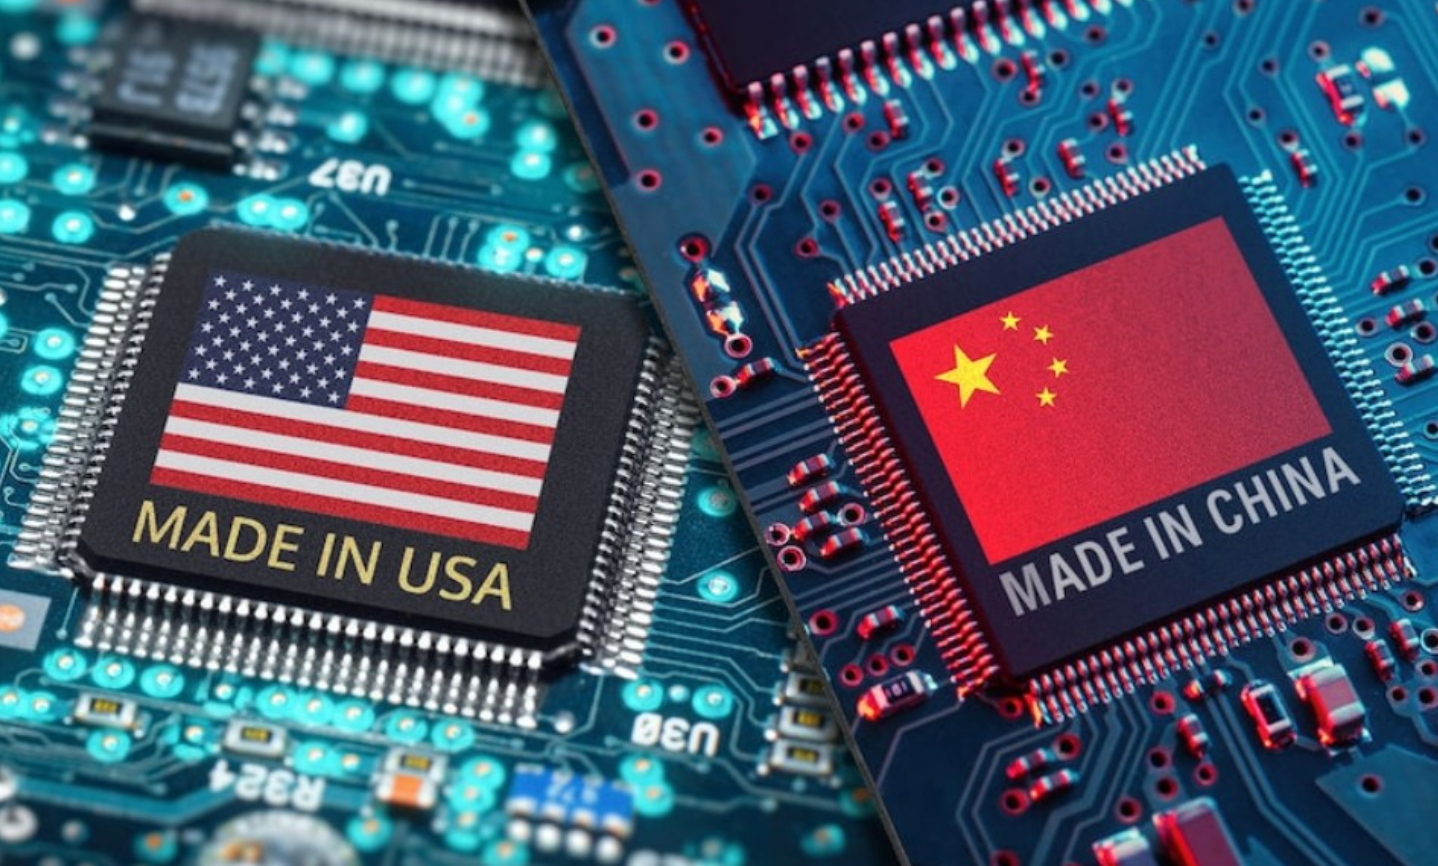 Cạnh tranh về chất bán dẫn đang là lĩnh vực nổi bật trong cuộc đối đầu hiện nay giữa Mỹ và Trung Quốc. (Ảnh: ABC News)